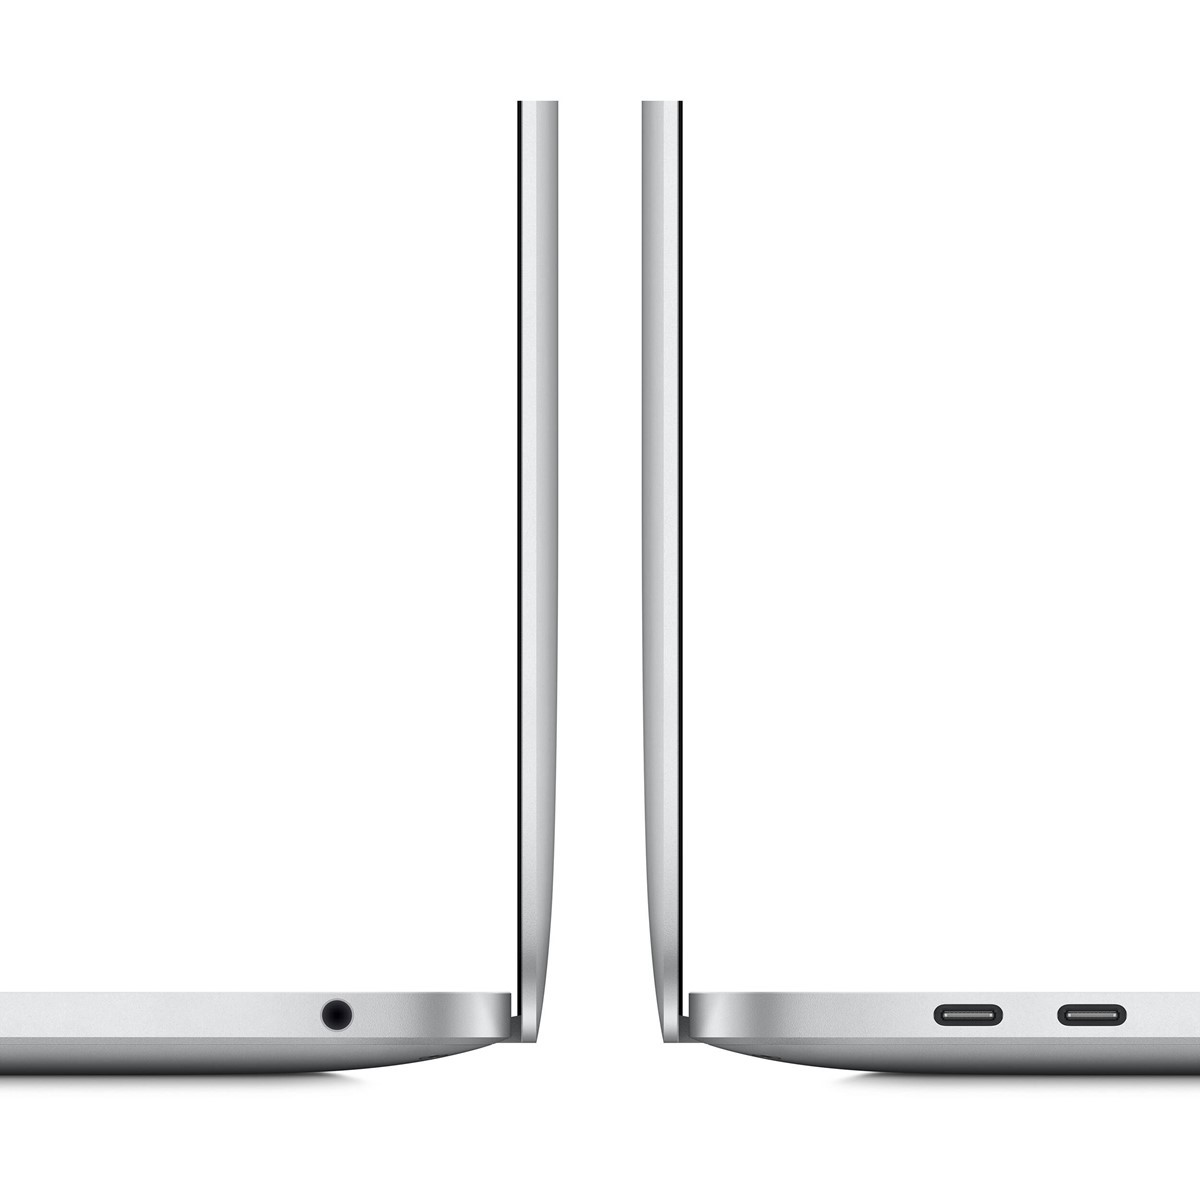 لپ تاپ اپل مدل MacBook Pro MYDC2 2020